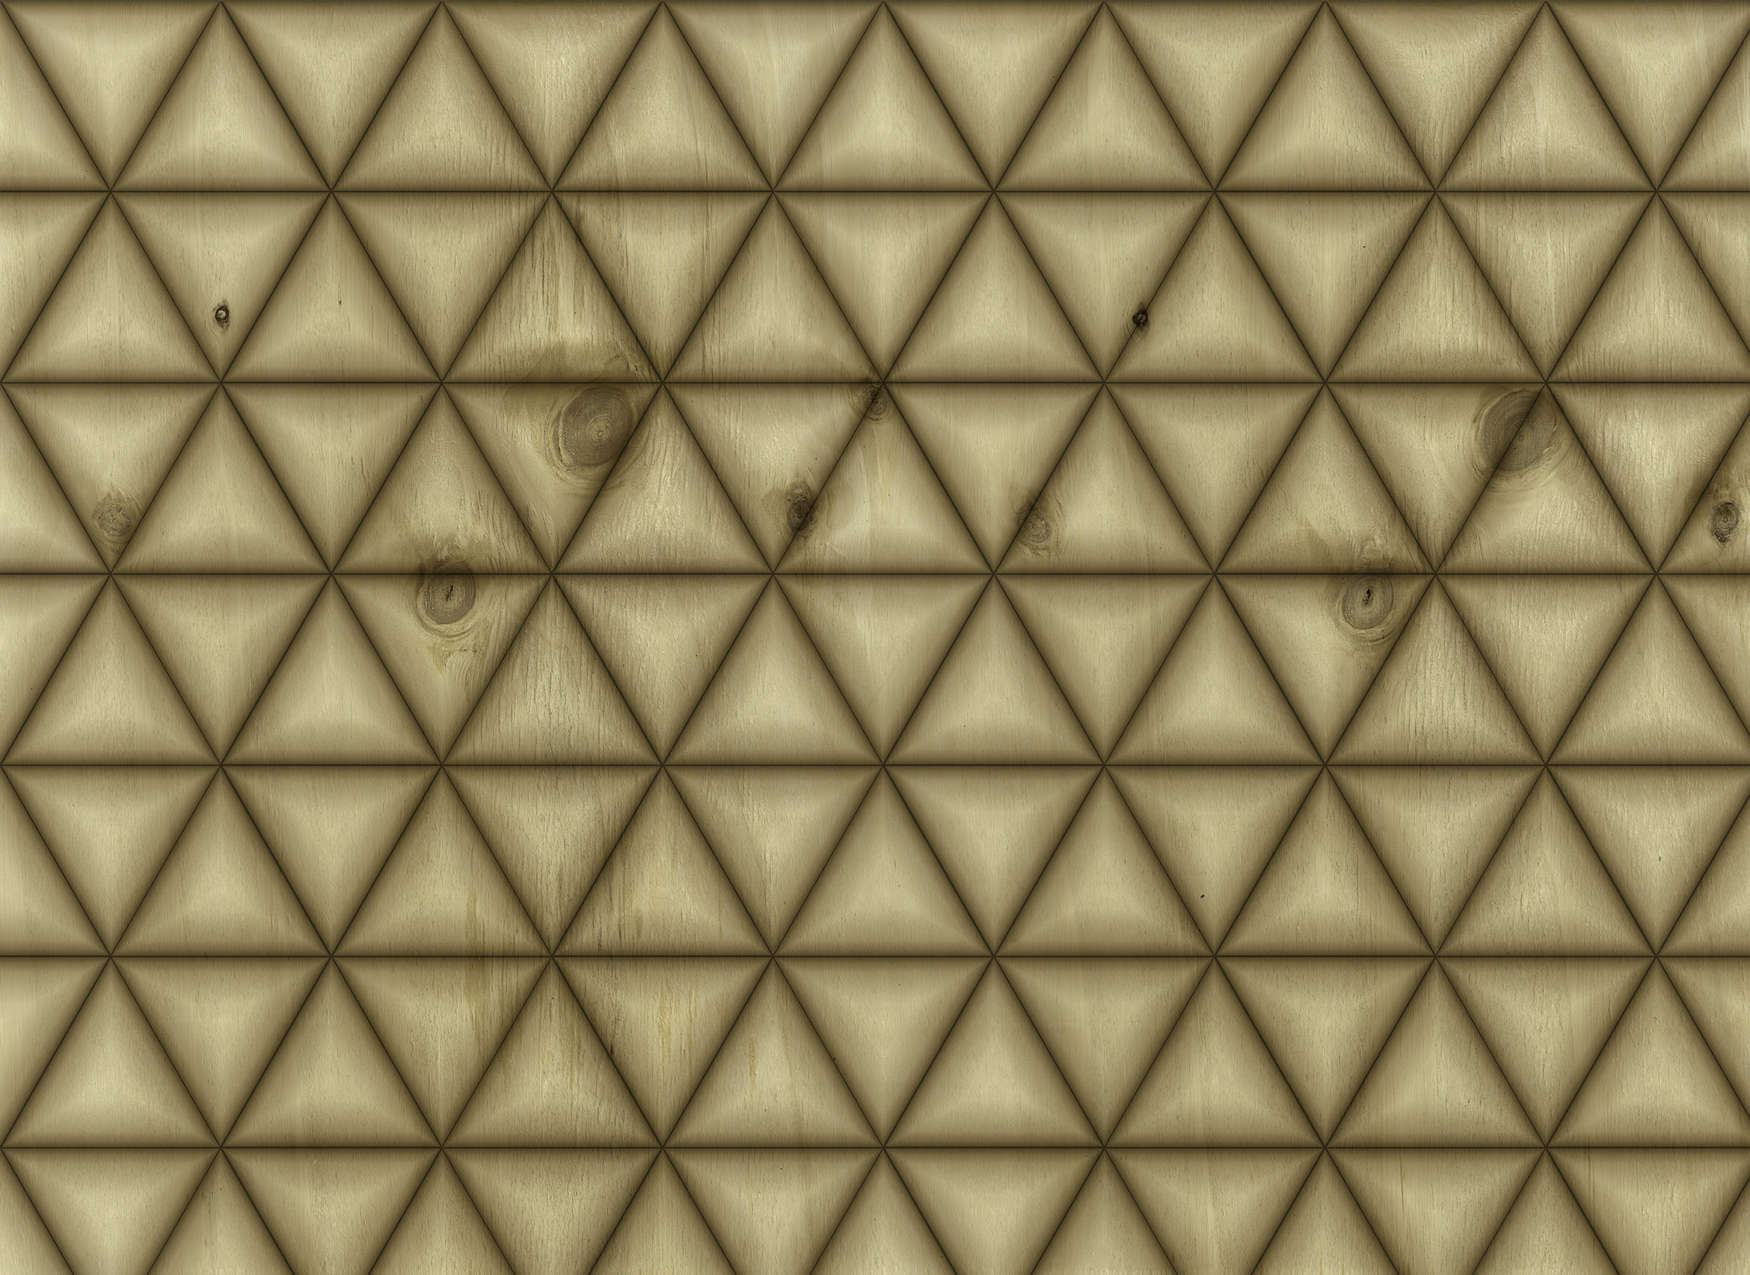             Papier peint géométrique triangulaire imitation bois - marron, beige
        